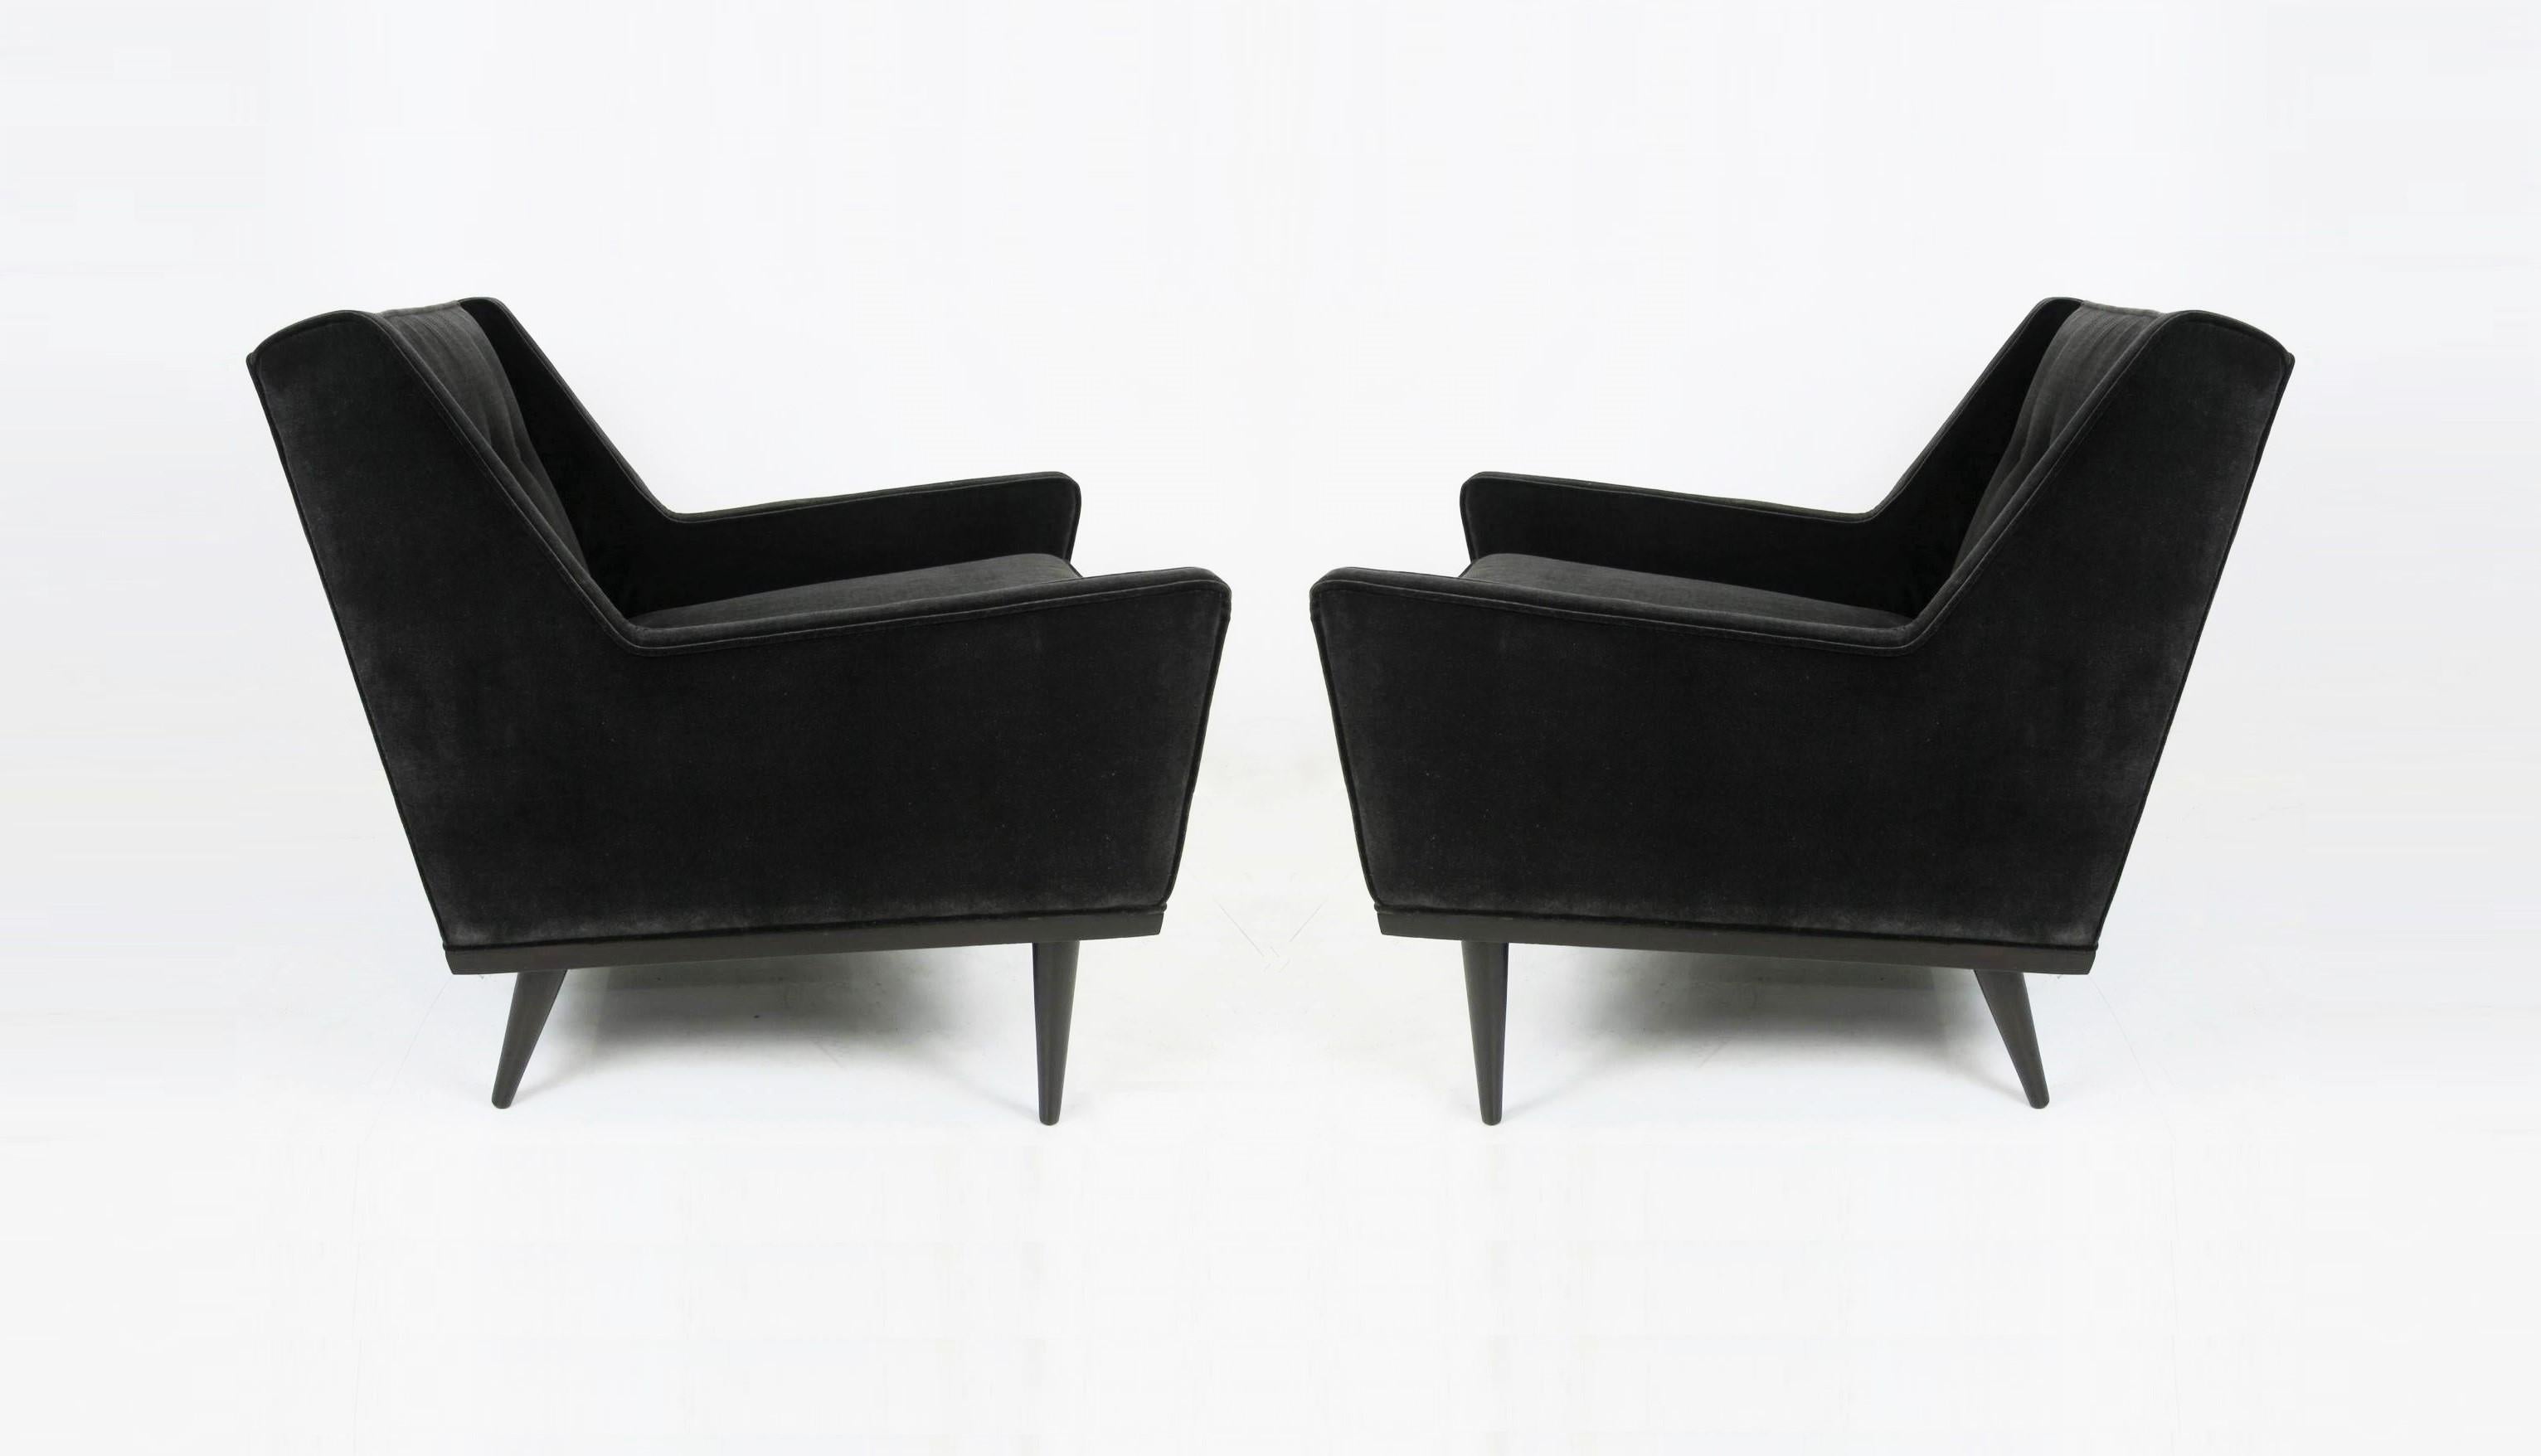 Absolut atemberaubende Club Lounge Chairs, entworfen von Milo Baughman für James Inc, einem frühen Imprint von Thayer Coggin. Sie zeichnen sich durch ihre klassische Midcentury-Linie und den schlichten Sockel aus Walnussholz aus. Dieses Paar